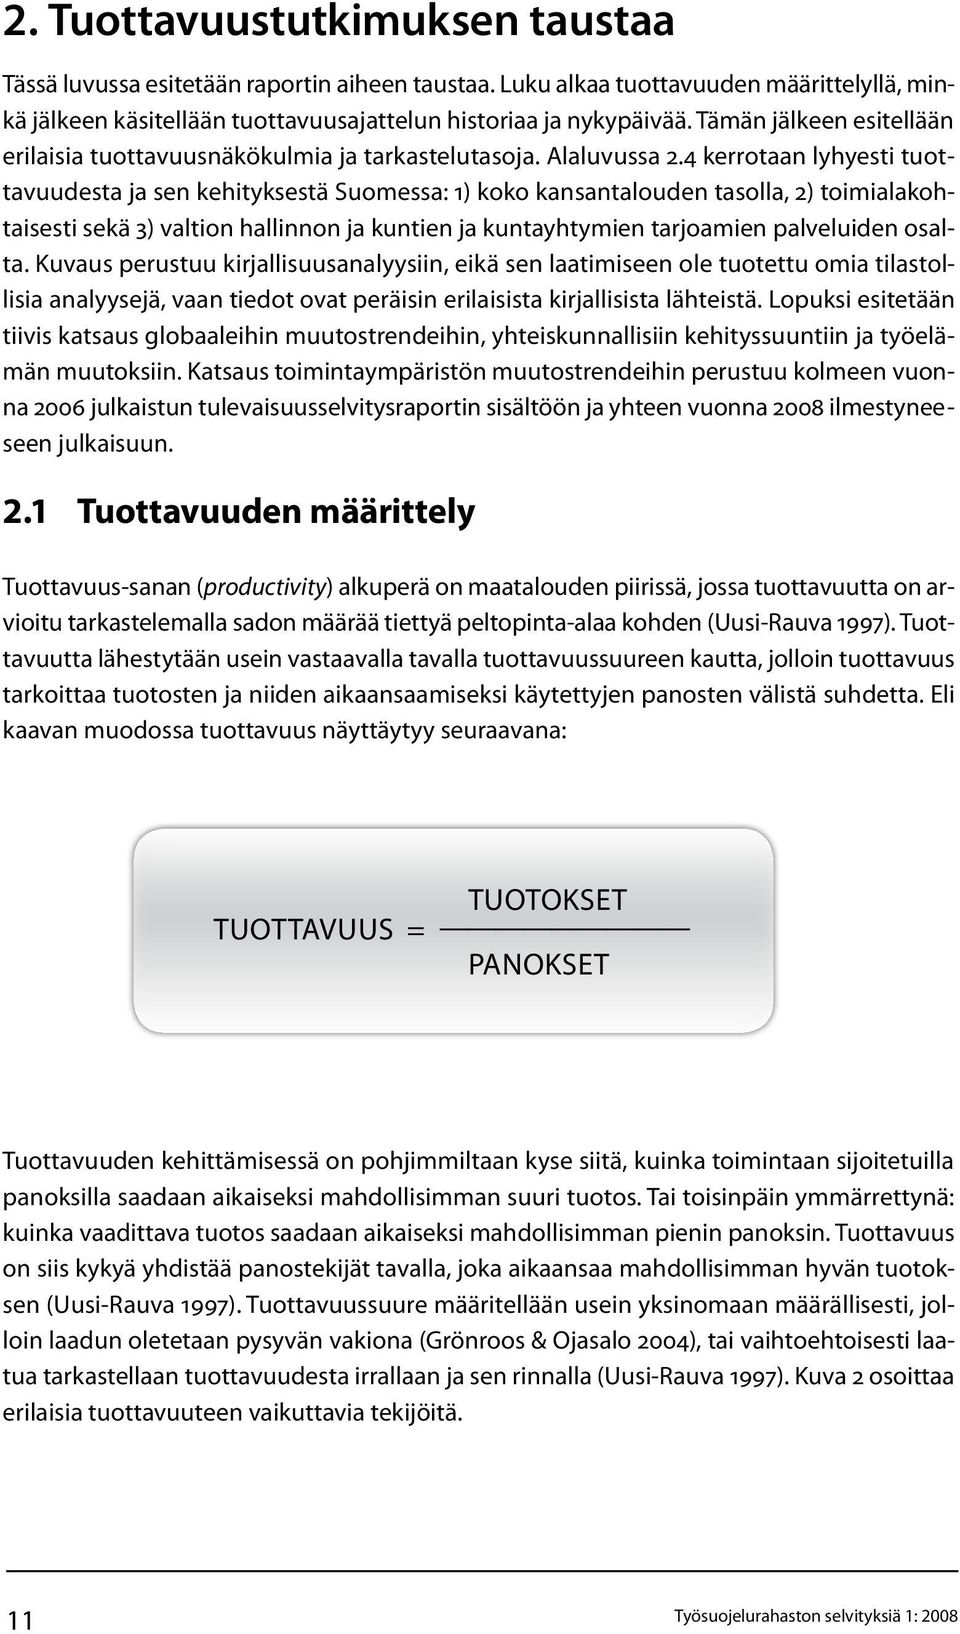 4 kerrotaan lyhyesti tuottavuudesta ja sen kehityksestä Suomessa: 1) koko kansantalouden tasolla, 2) toimialakohtaisesti sekä 3) valtion hallinnon ja kuntien ja kuntayhtymien tarjoamien palveluiden